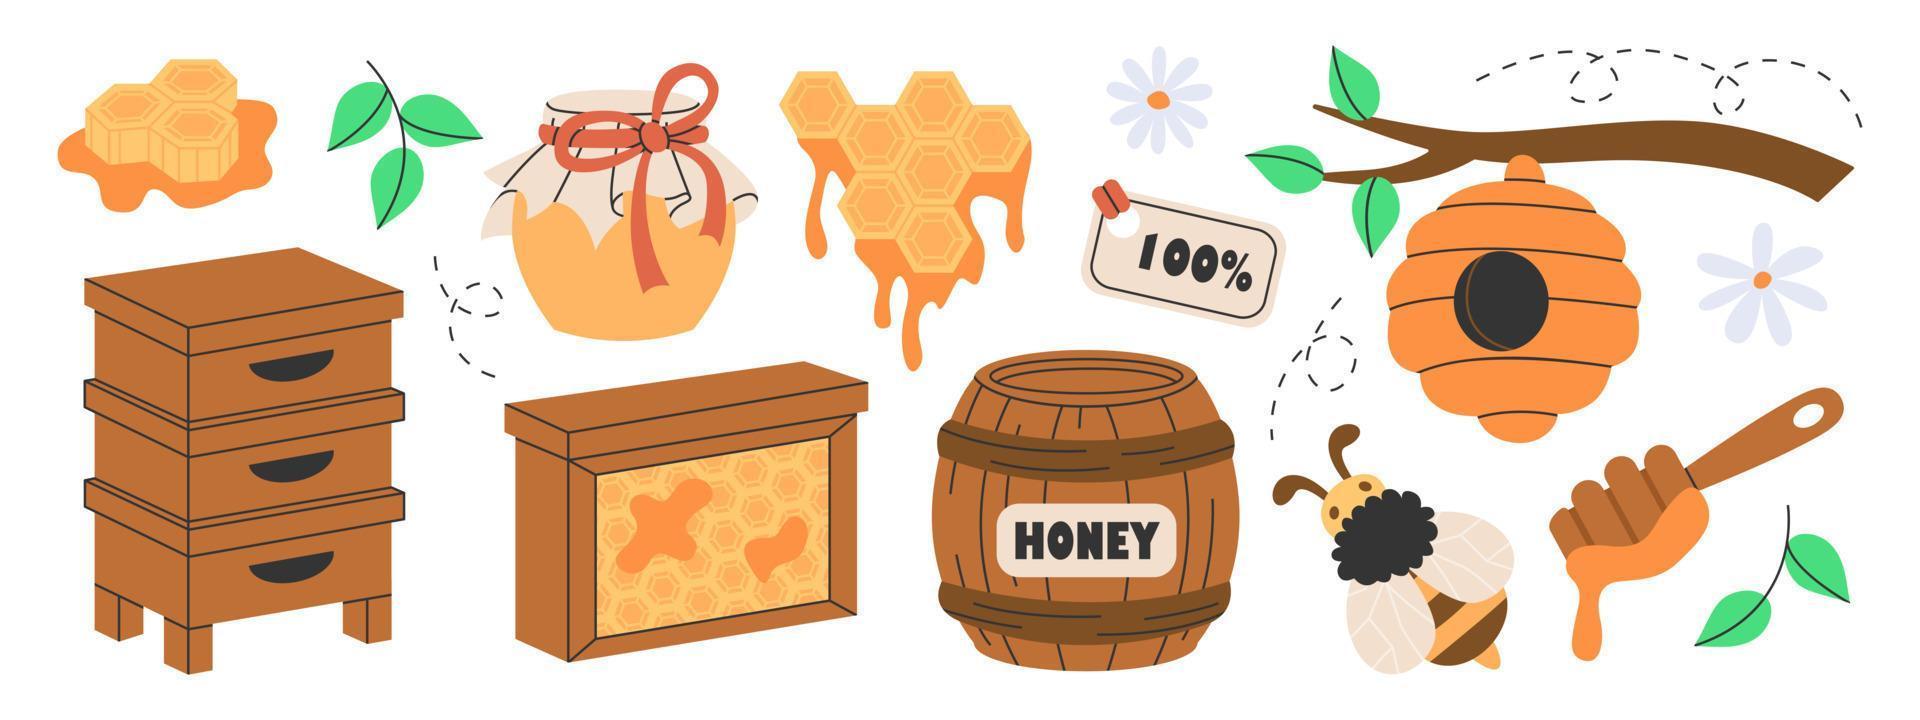 uppsättning av honung produktion, biodling eller biodling attribut. trä- bikupa, sexhörning honungskakor, bi, honung i glas burk, tunna, blommor, sked, bi bikupa på träd. organisk naturlig sötsaker från bigård. vektor